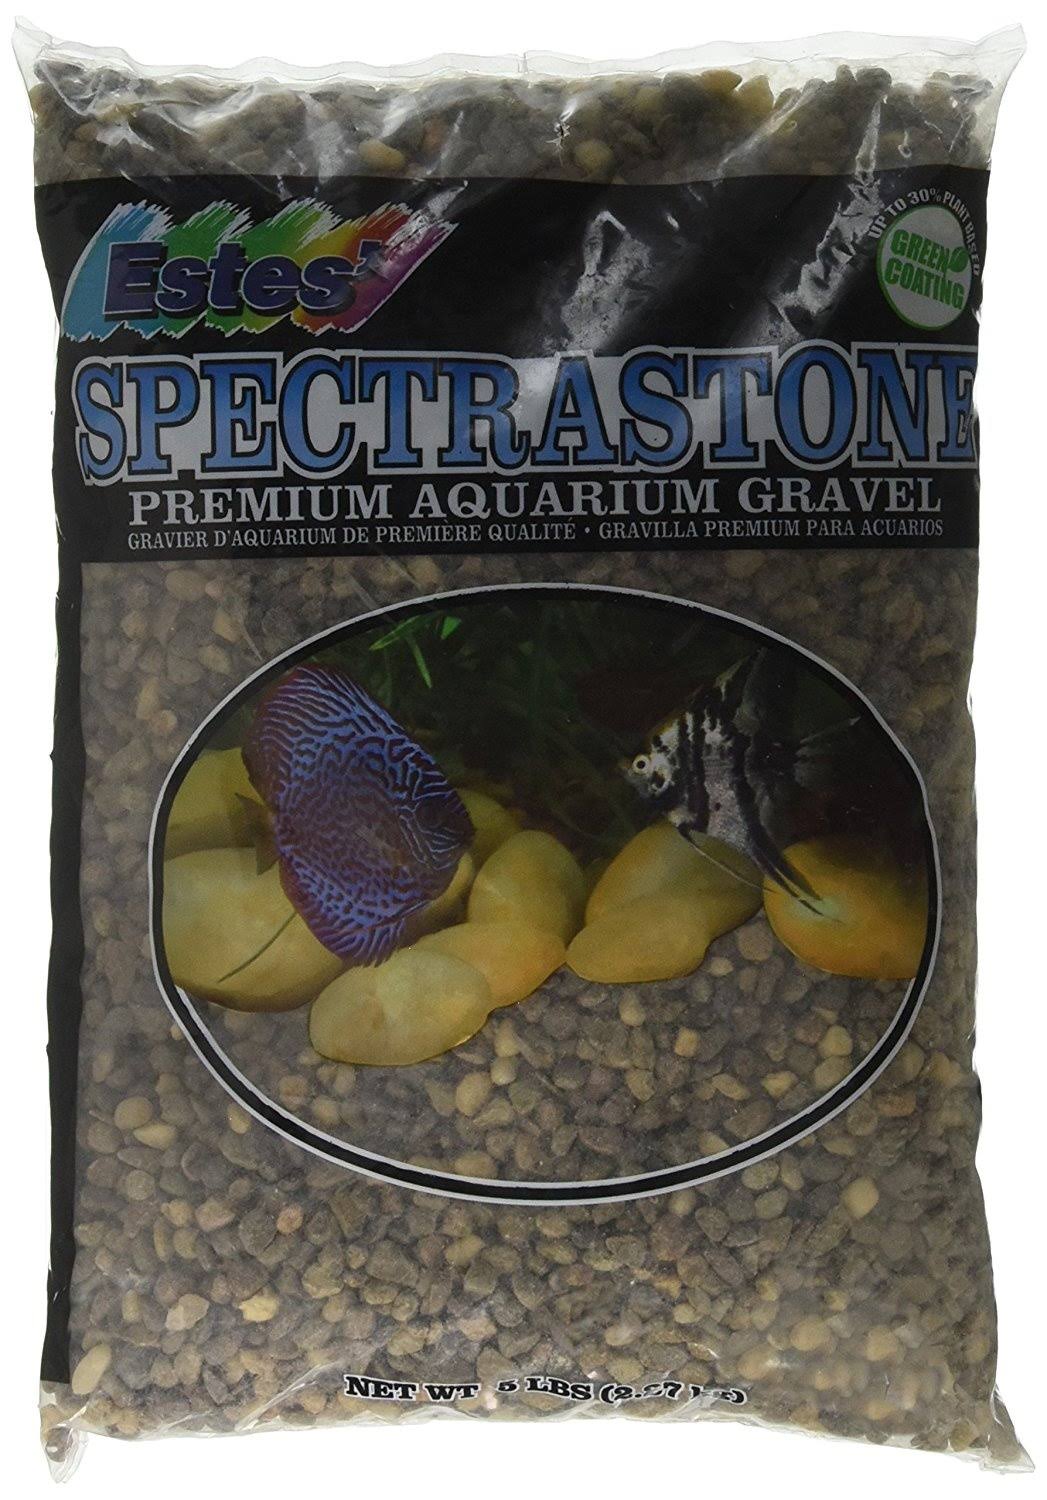 Spectrastone Deep River Regular for Freshwater Aquariums, 2.3kg Bag